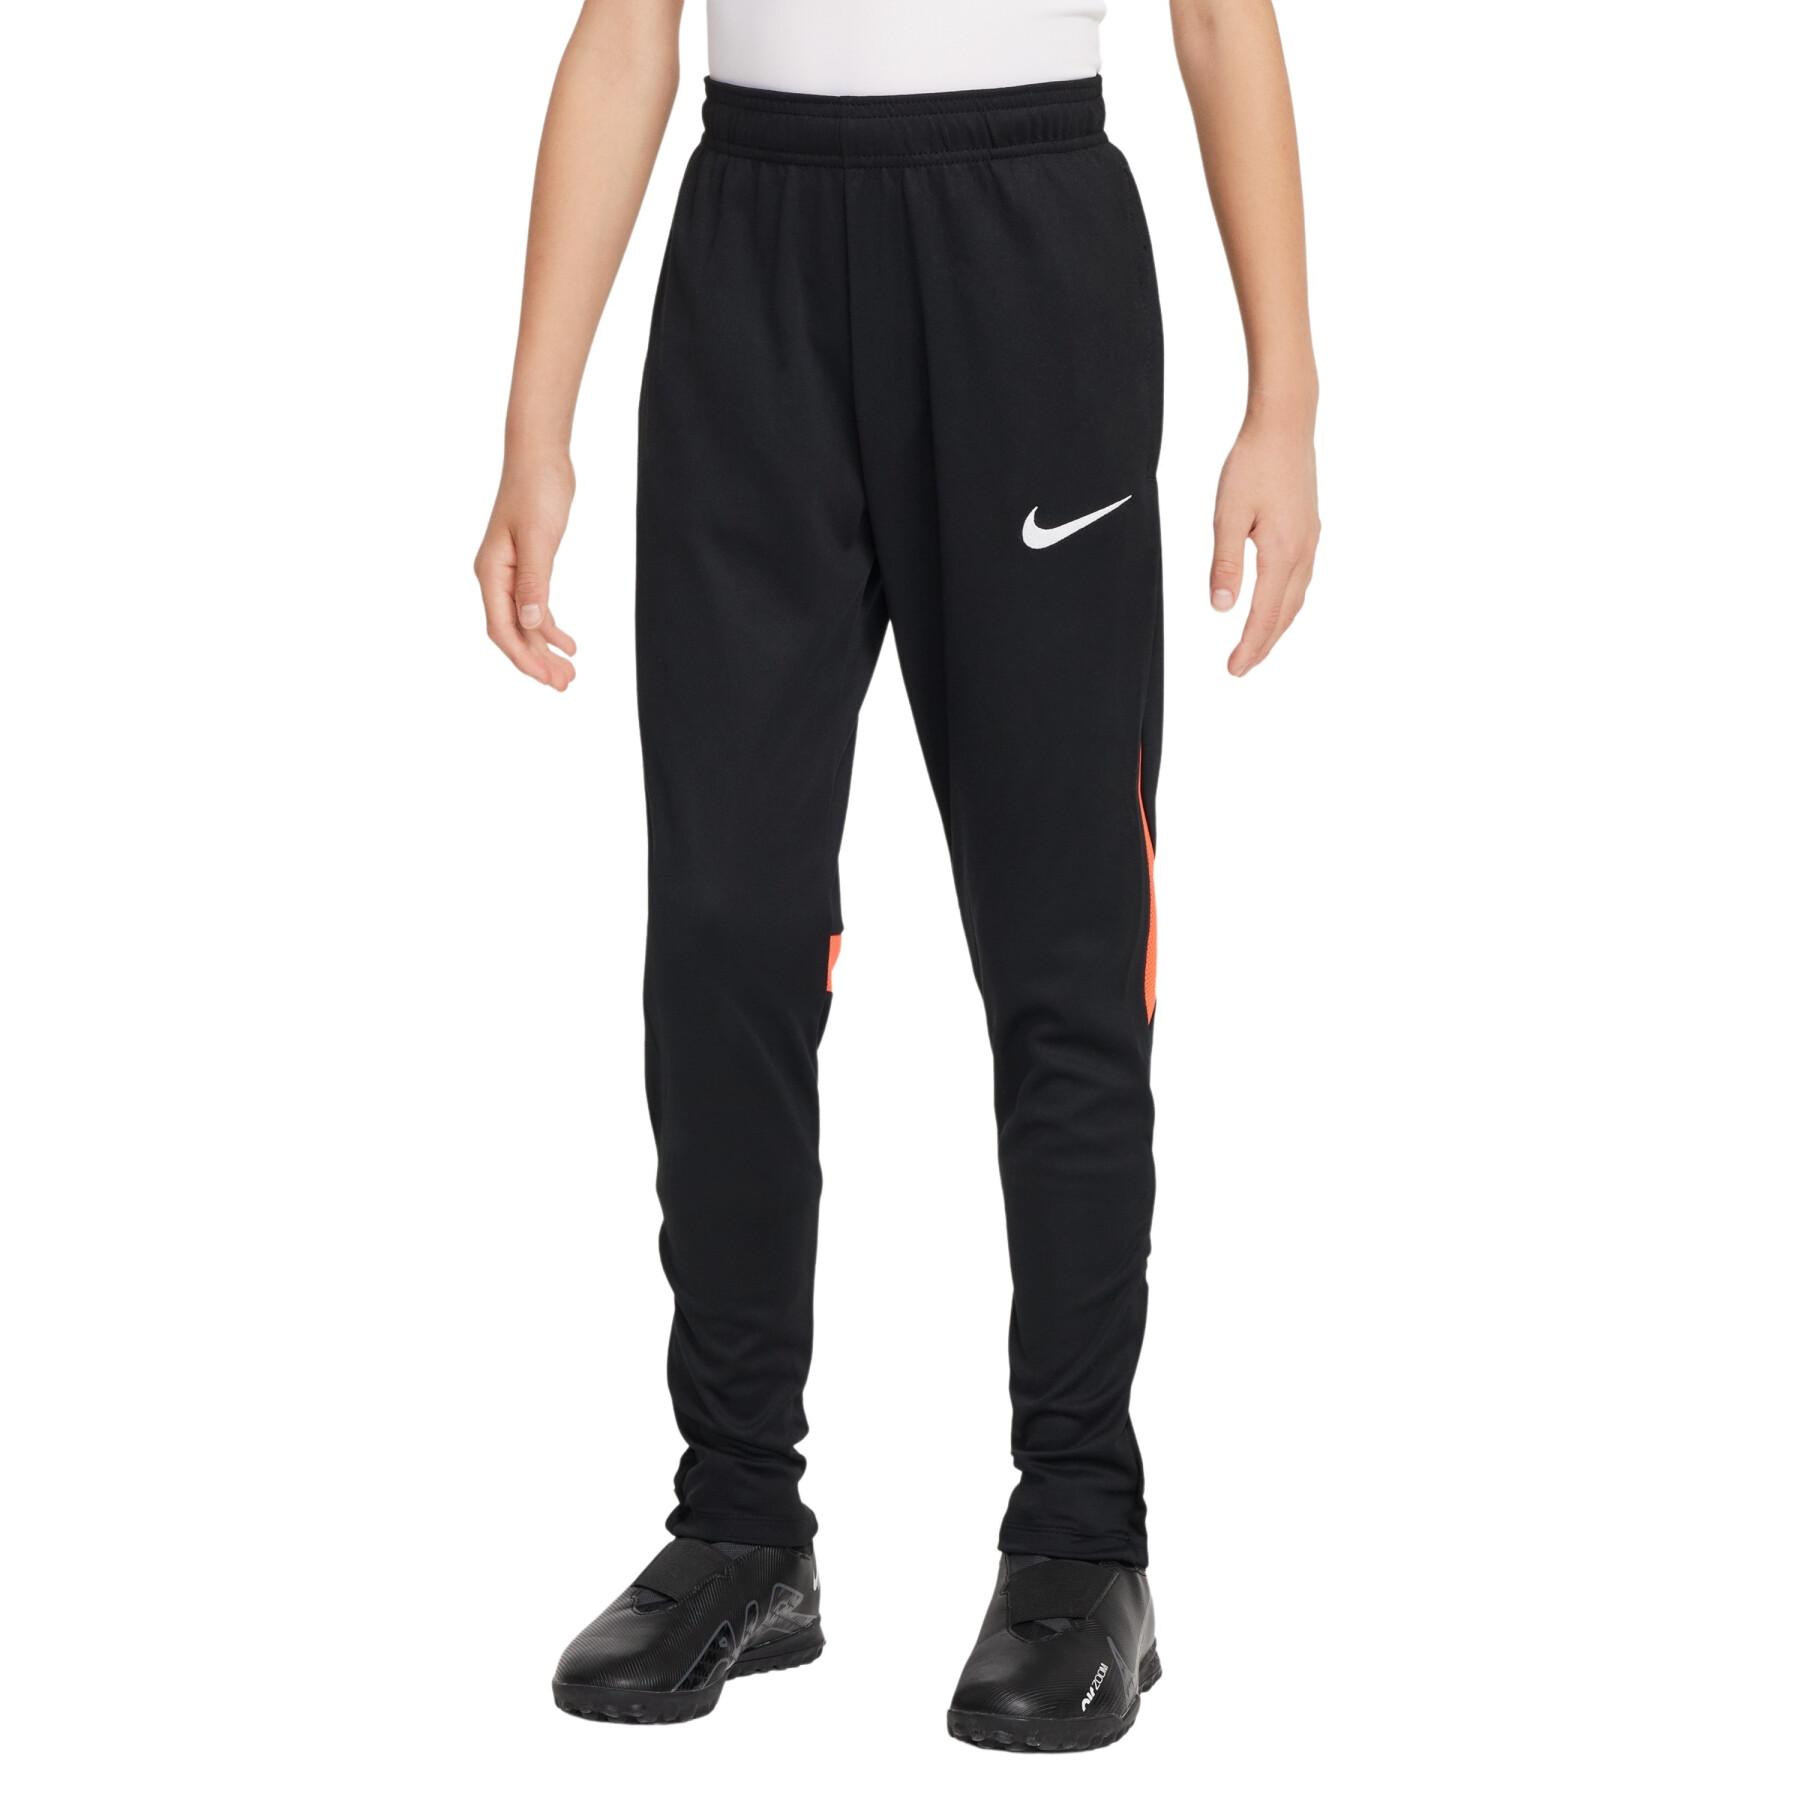 Children's Sweatpants suit Nike Dri-FIT Academy Pro